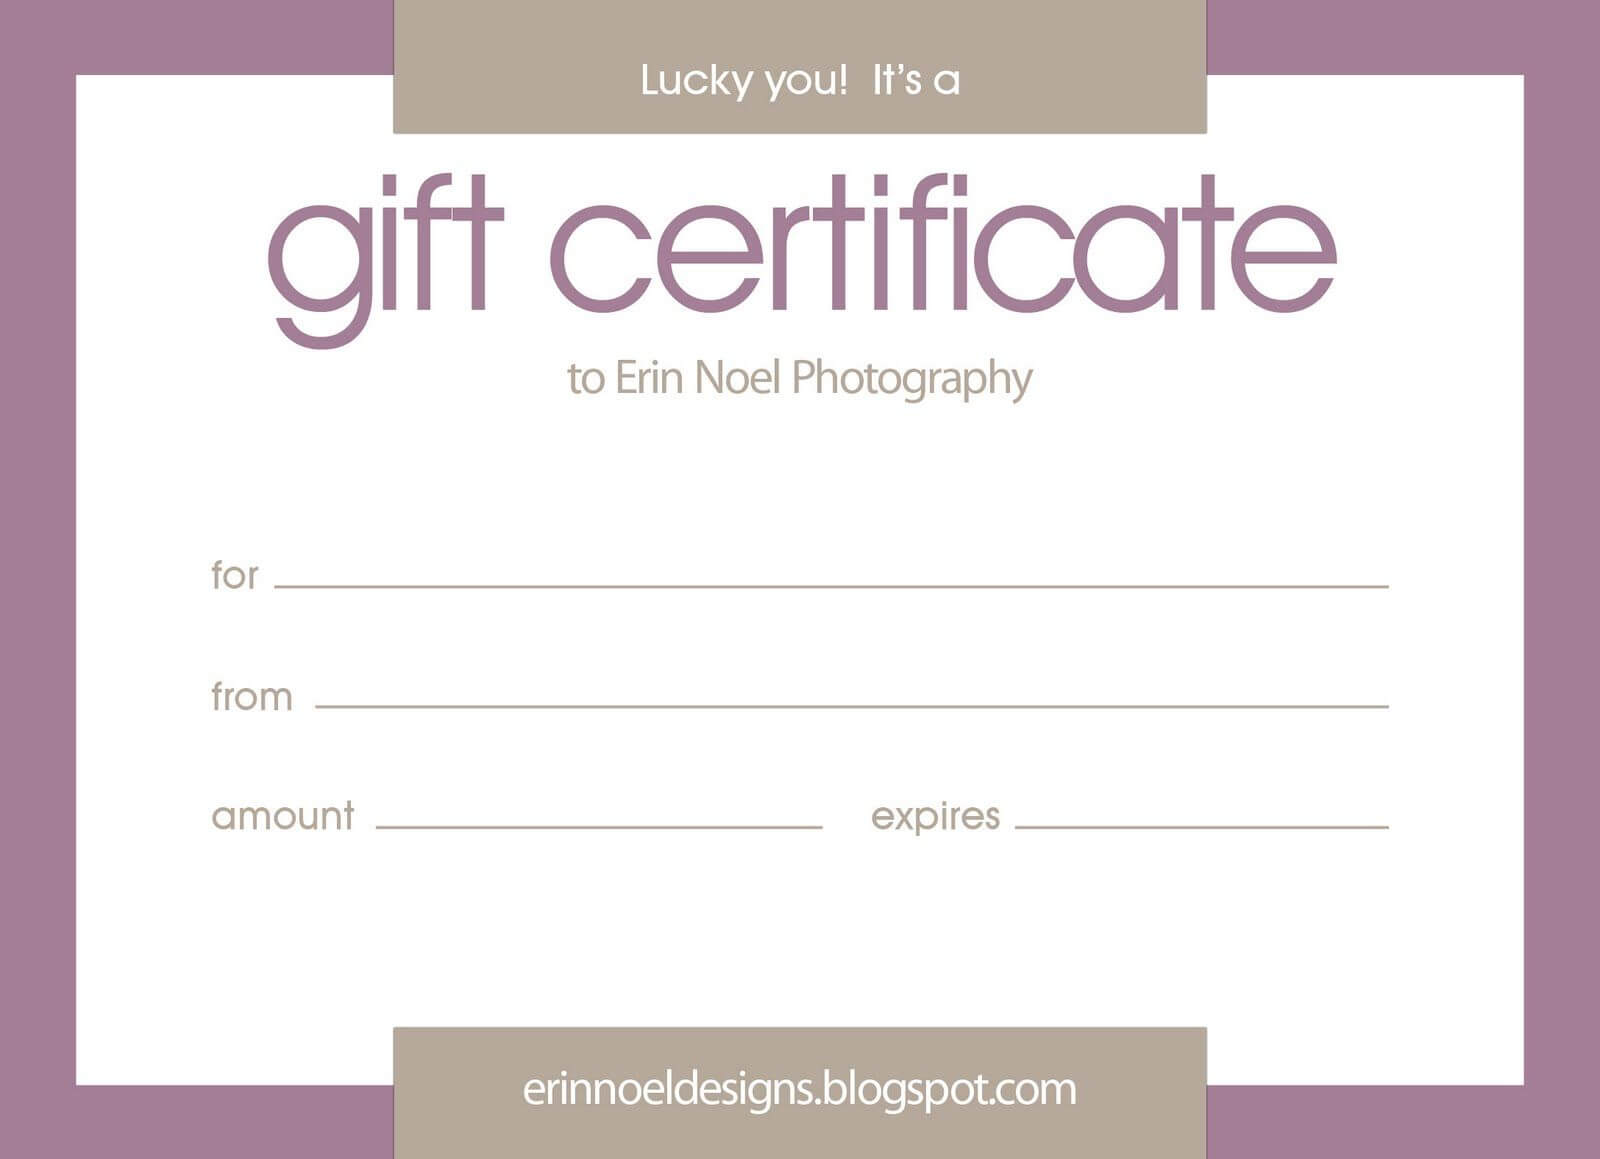 Erin Noel Designs: Gift Certificates! | Gift Certificate Within Publisher Gift Certificate Template